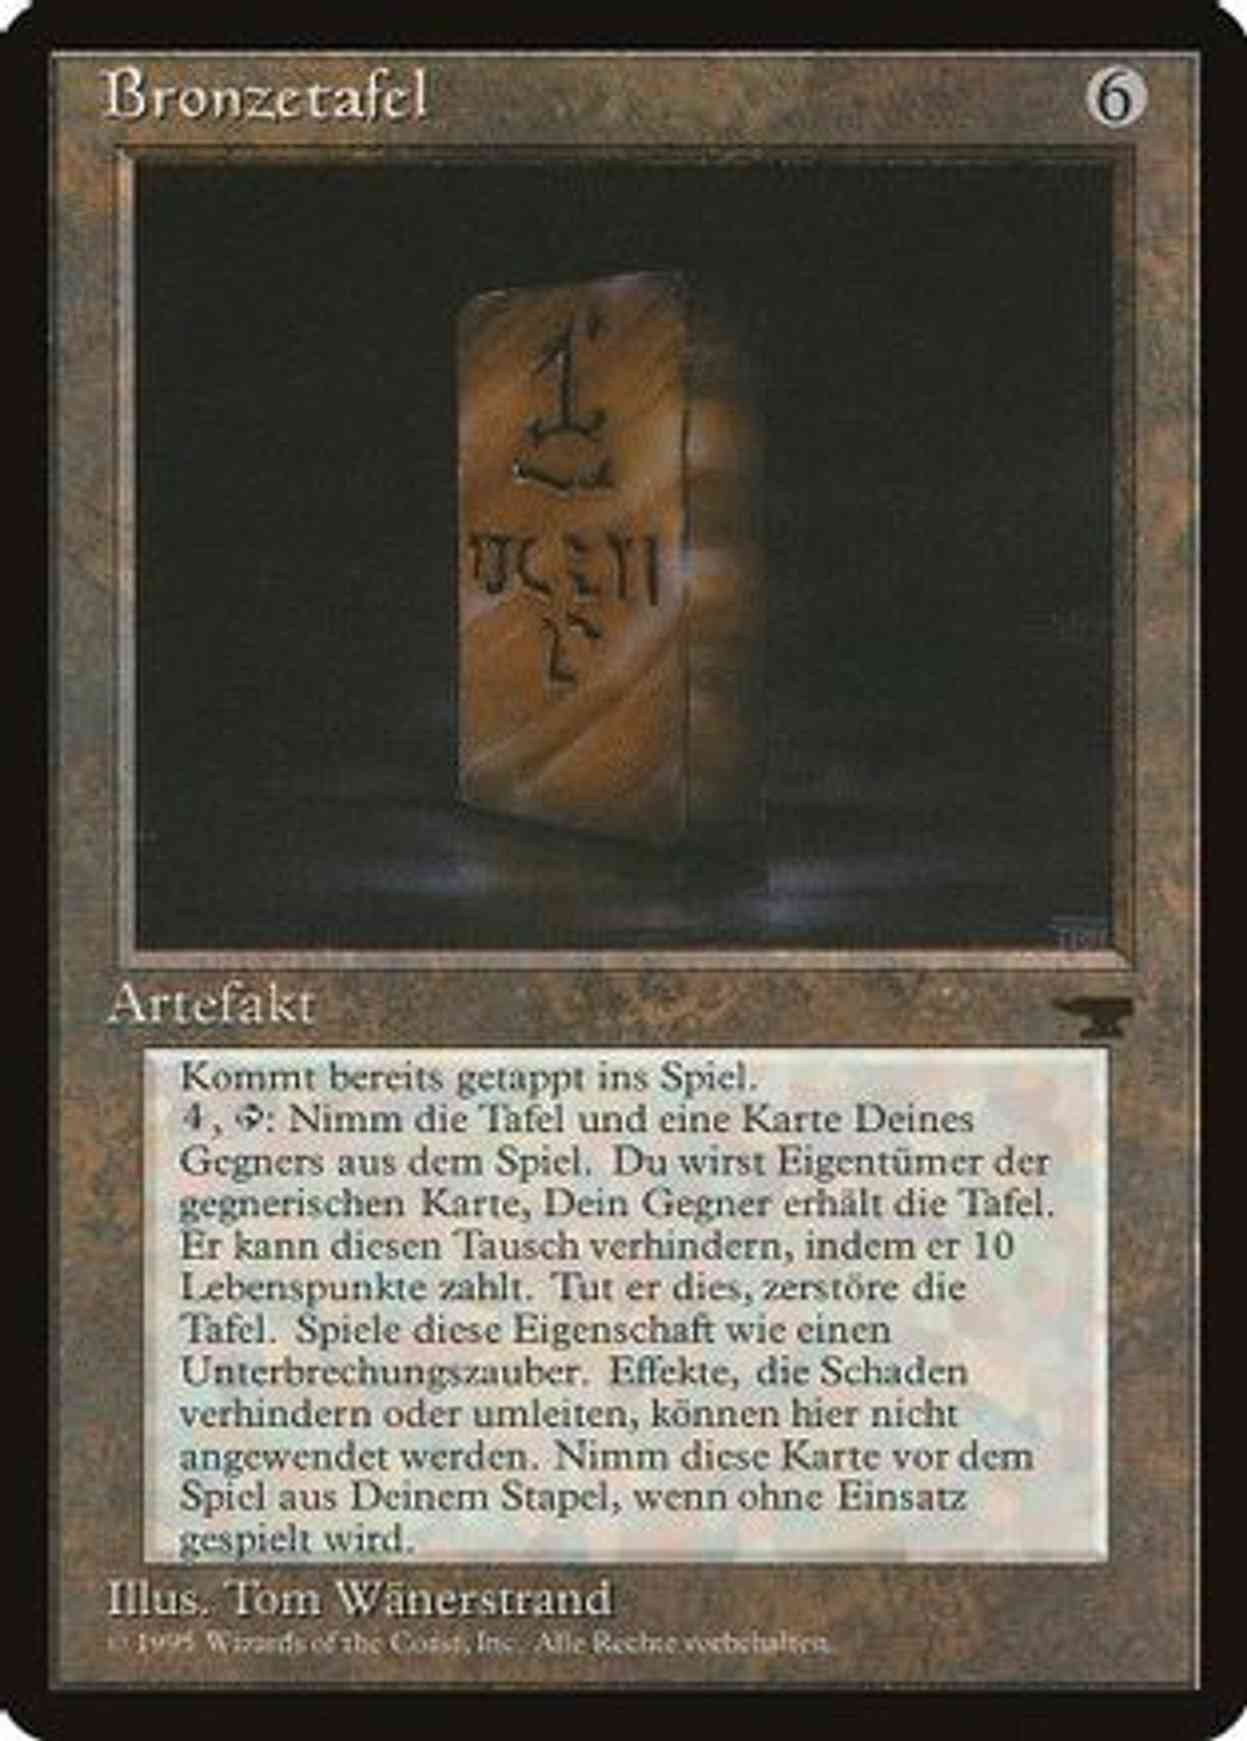 Bronze Tablet (German) - "Bronzetafel" magic card front